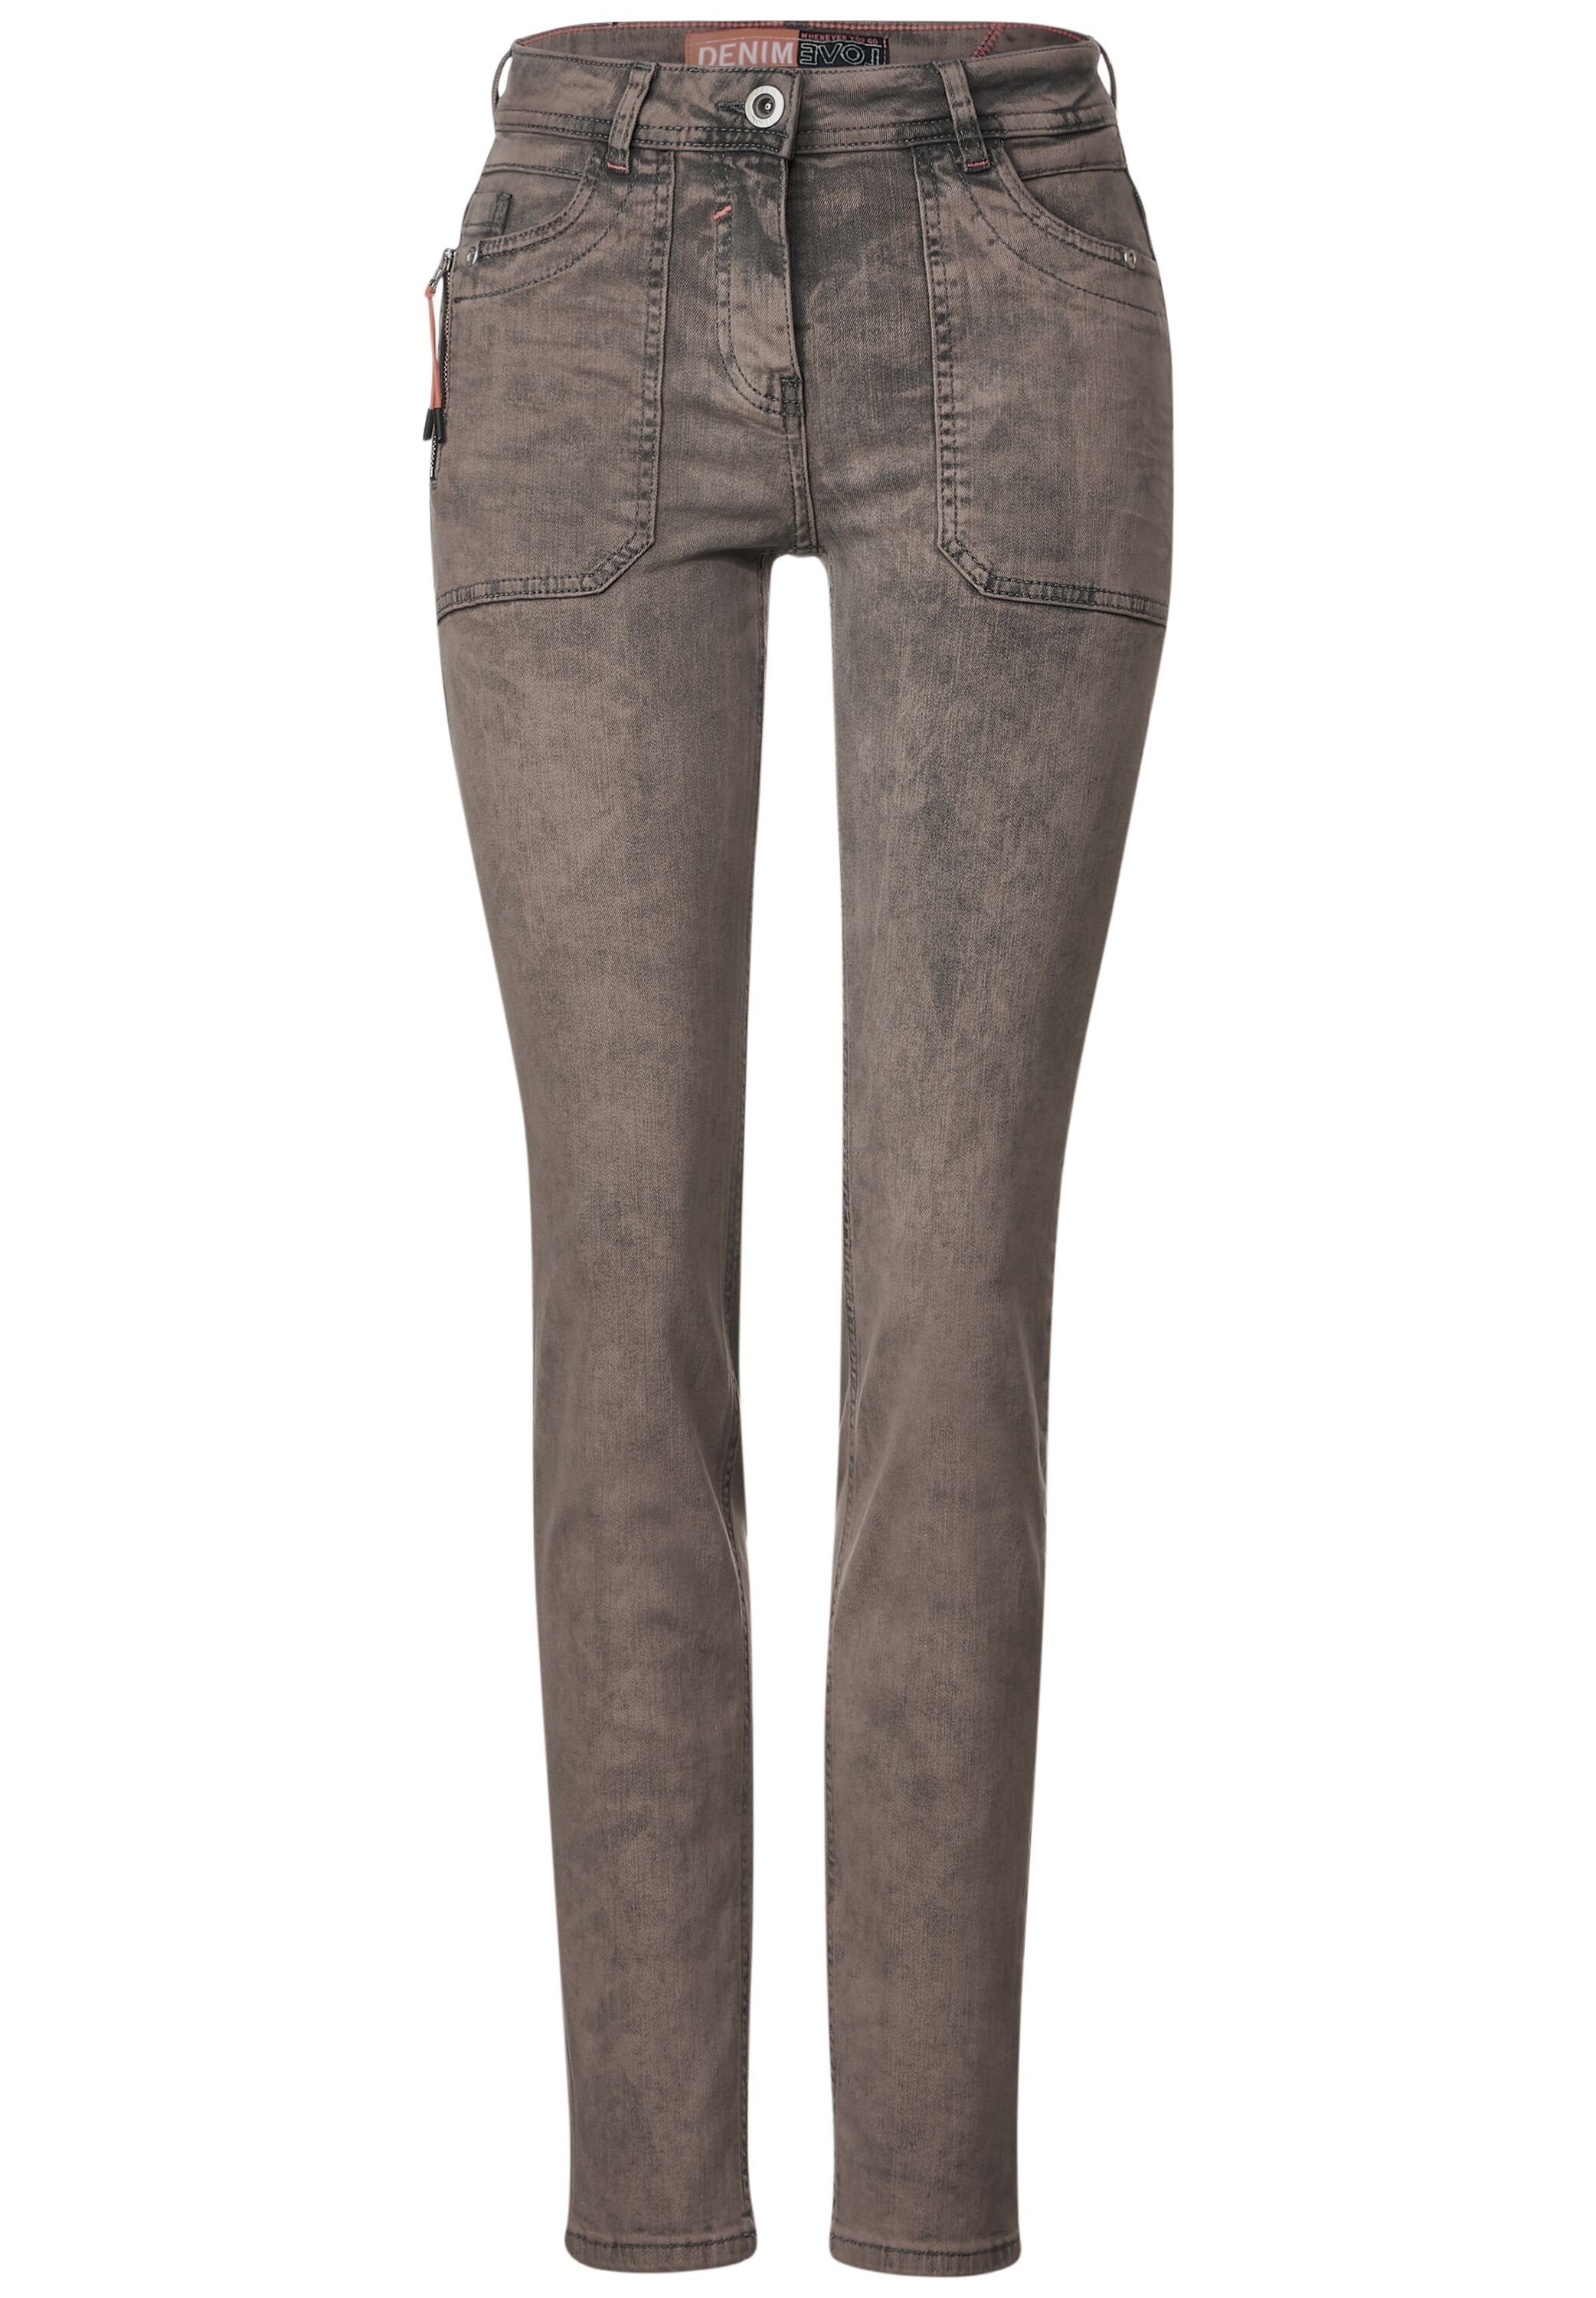 Cecil Slim fit jeans Damesjeans Toronto stijl Met modieuze wassing zijzak met ritssluiting